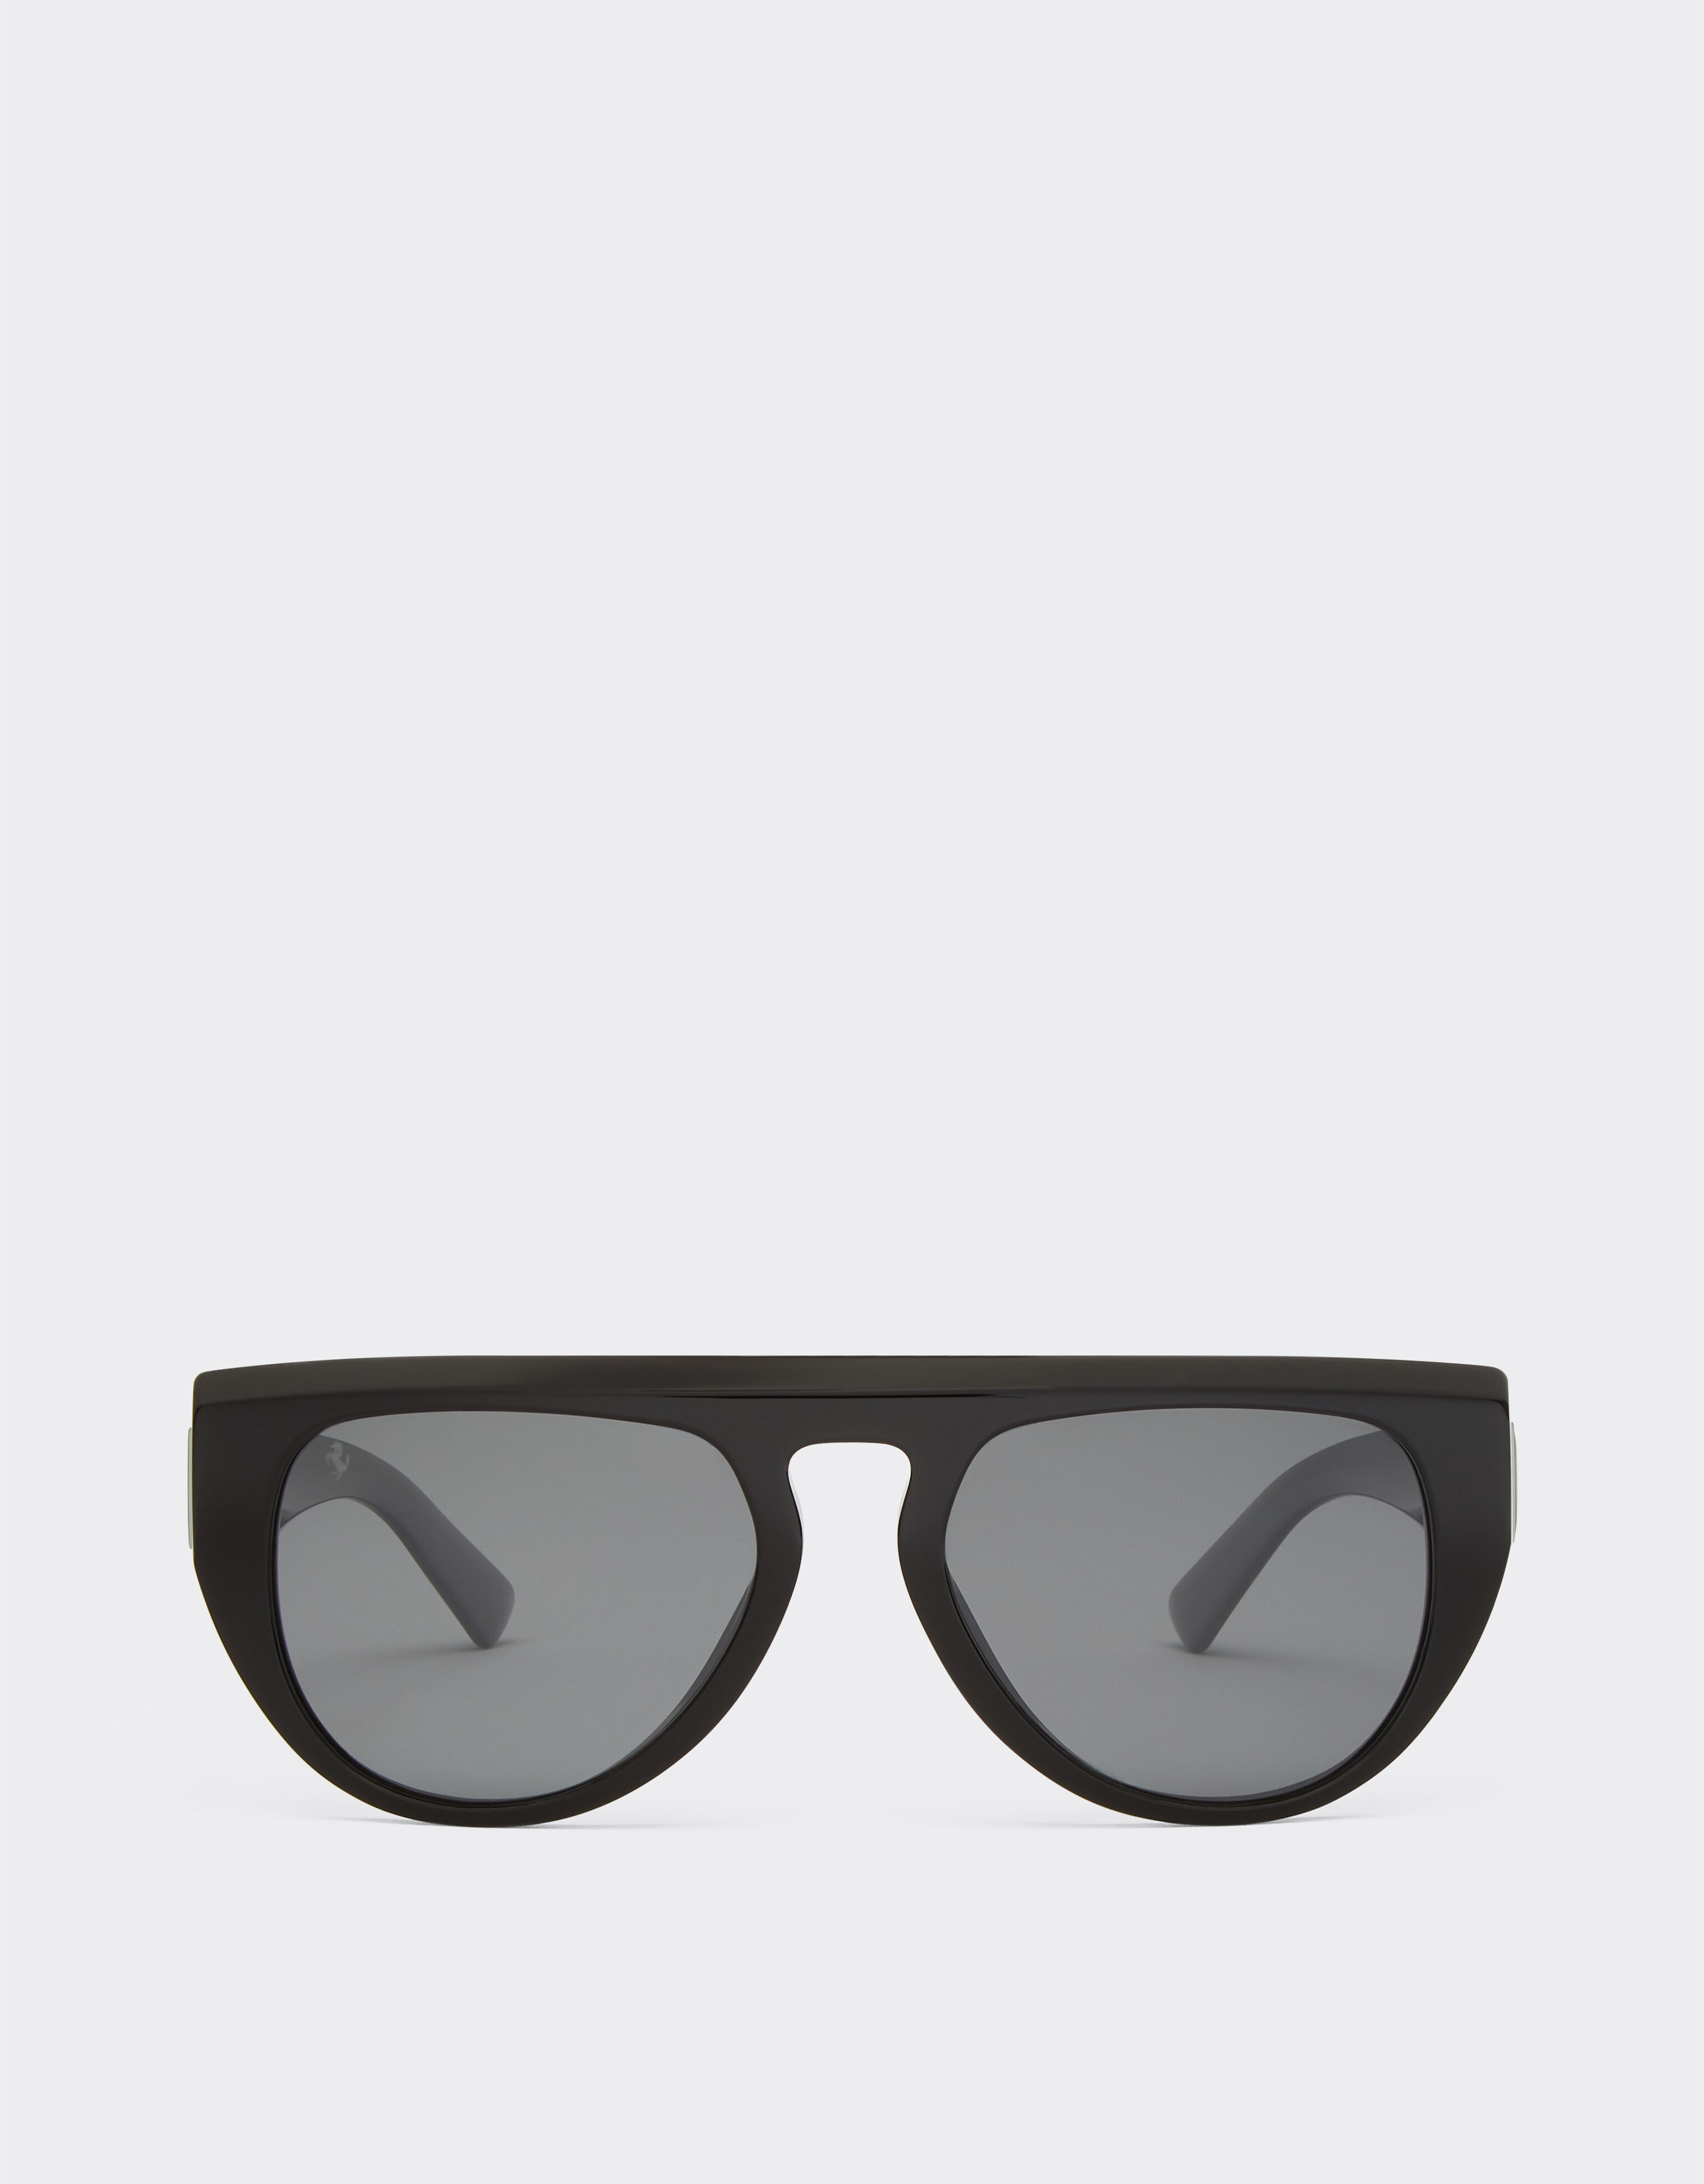 Ferrari Gafas de sol Ferrari de acetato negro con lentes de espejo polarizadas Negro mate F1250f